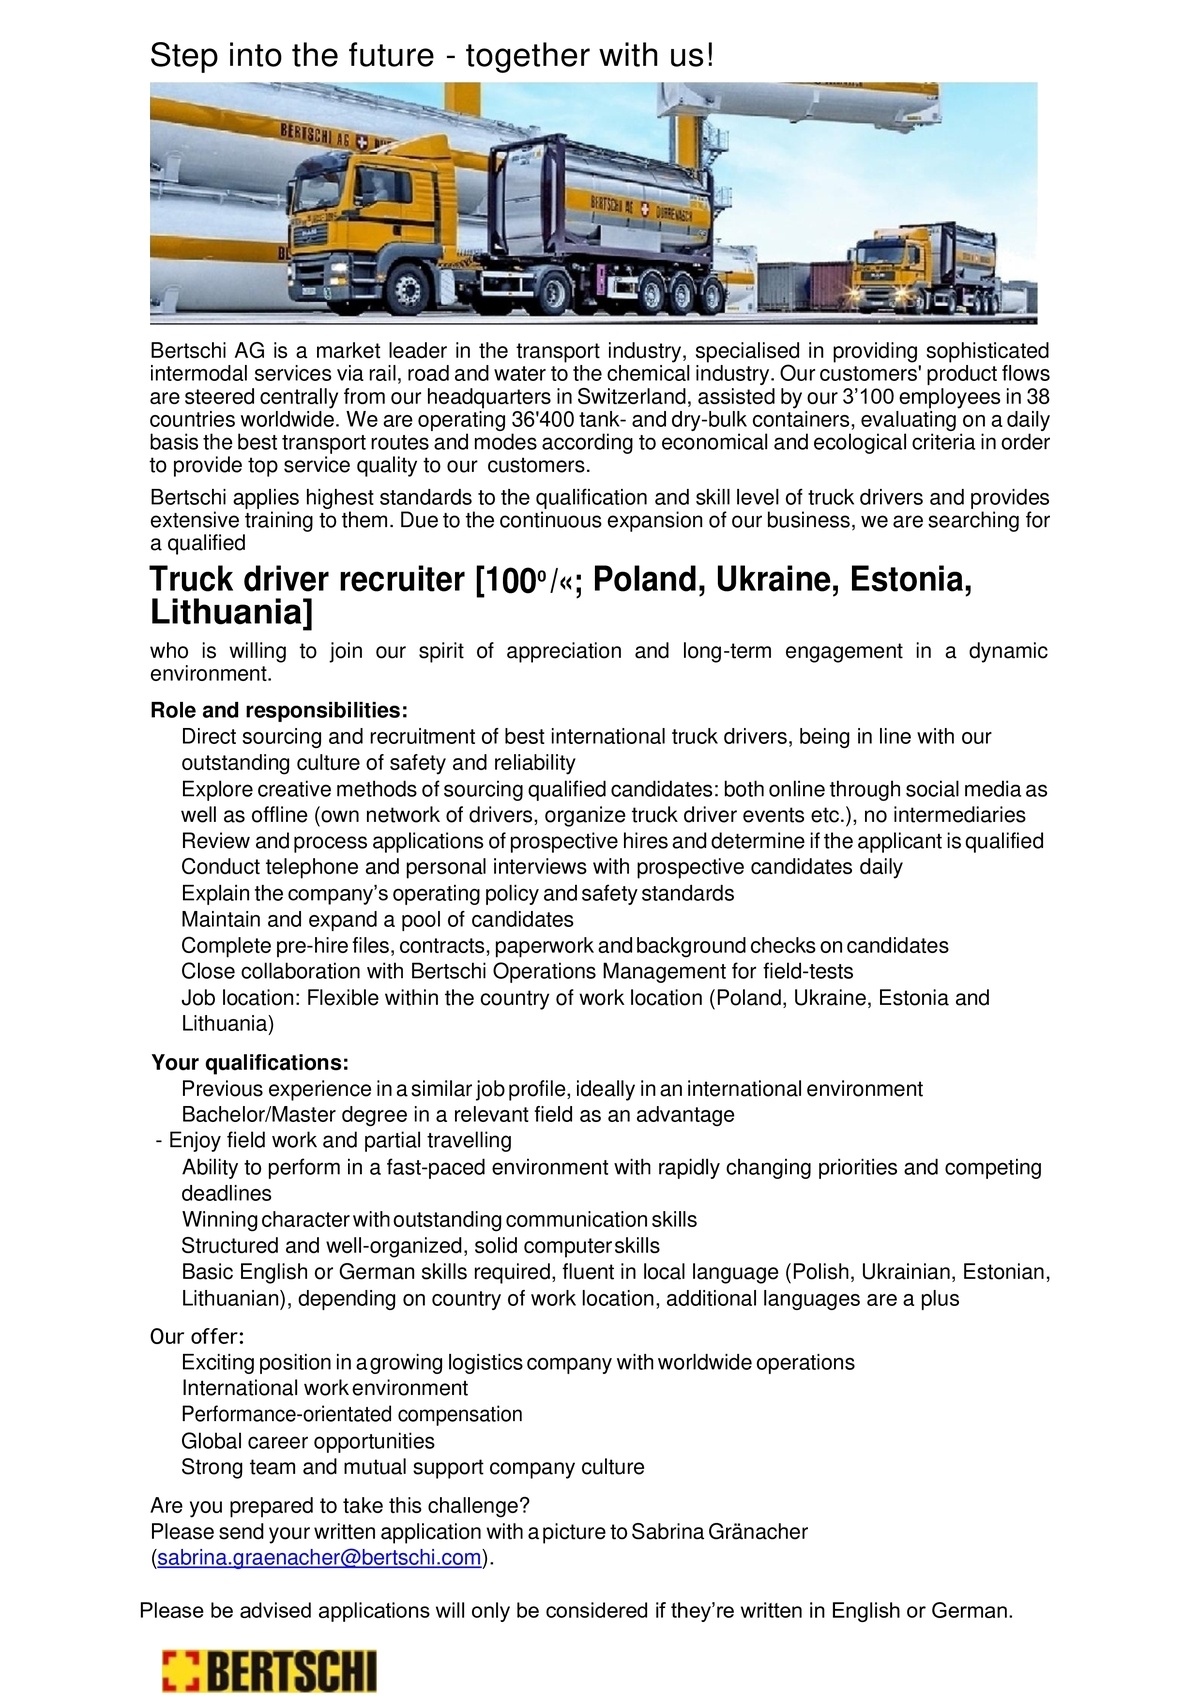 Bertschi AG Truck driver recruiter